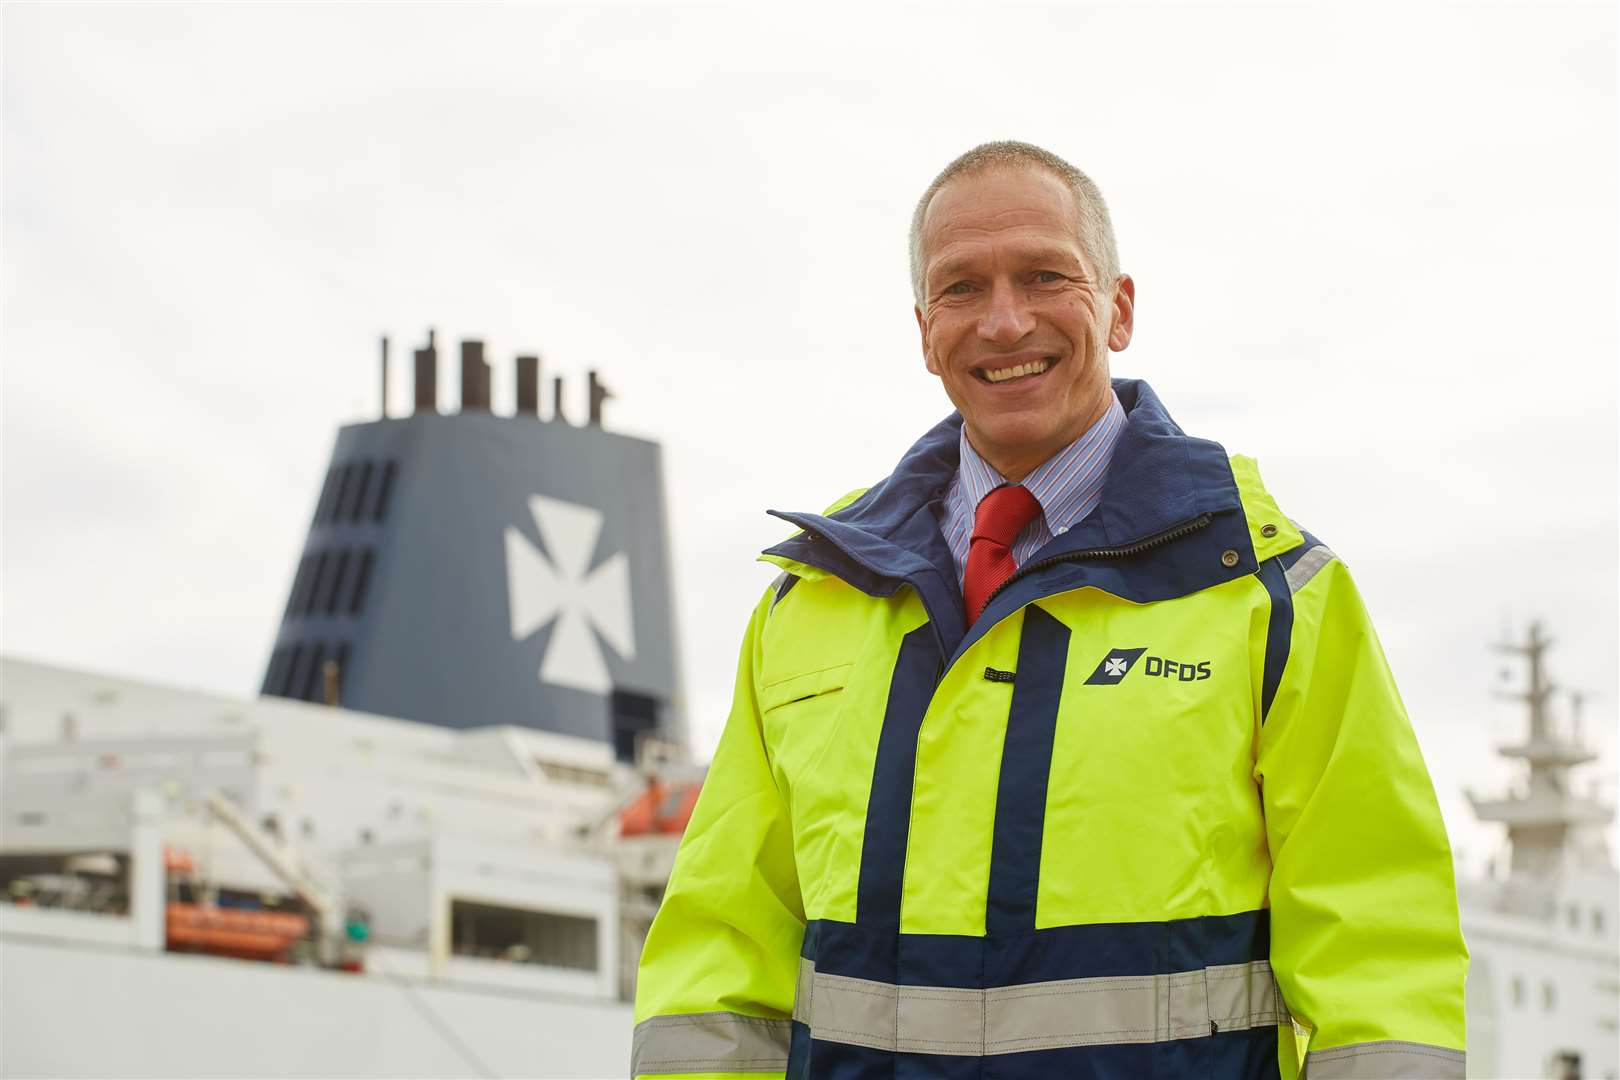 DFDS freight director Wayne Bullen